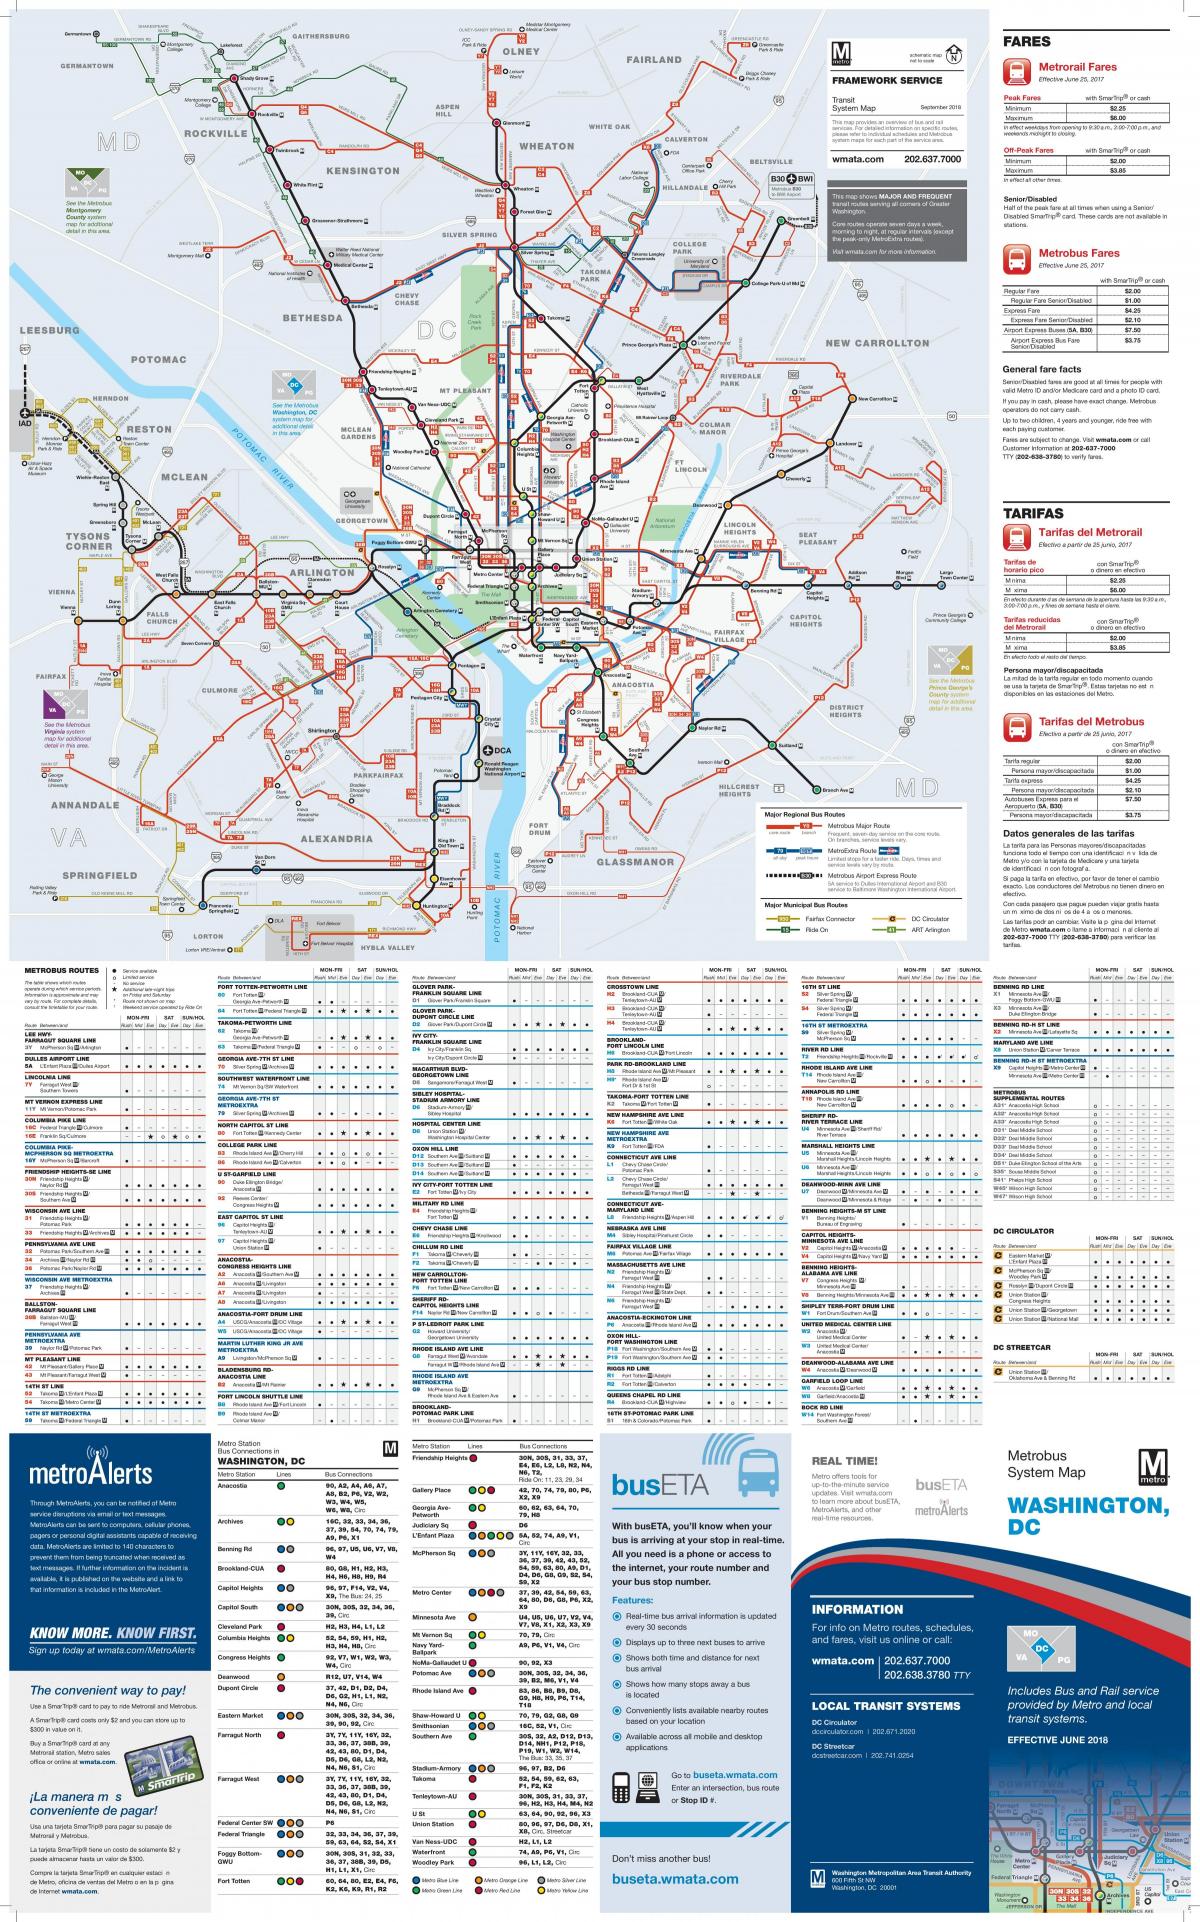 Mapa da rodoviária de Washington DC